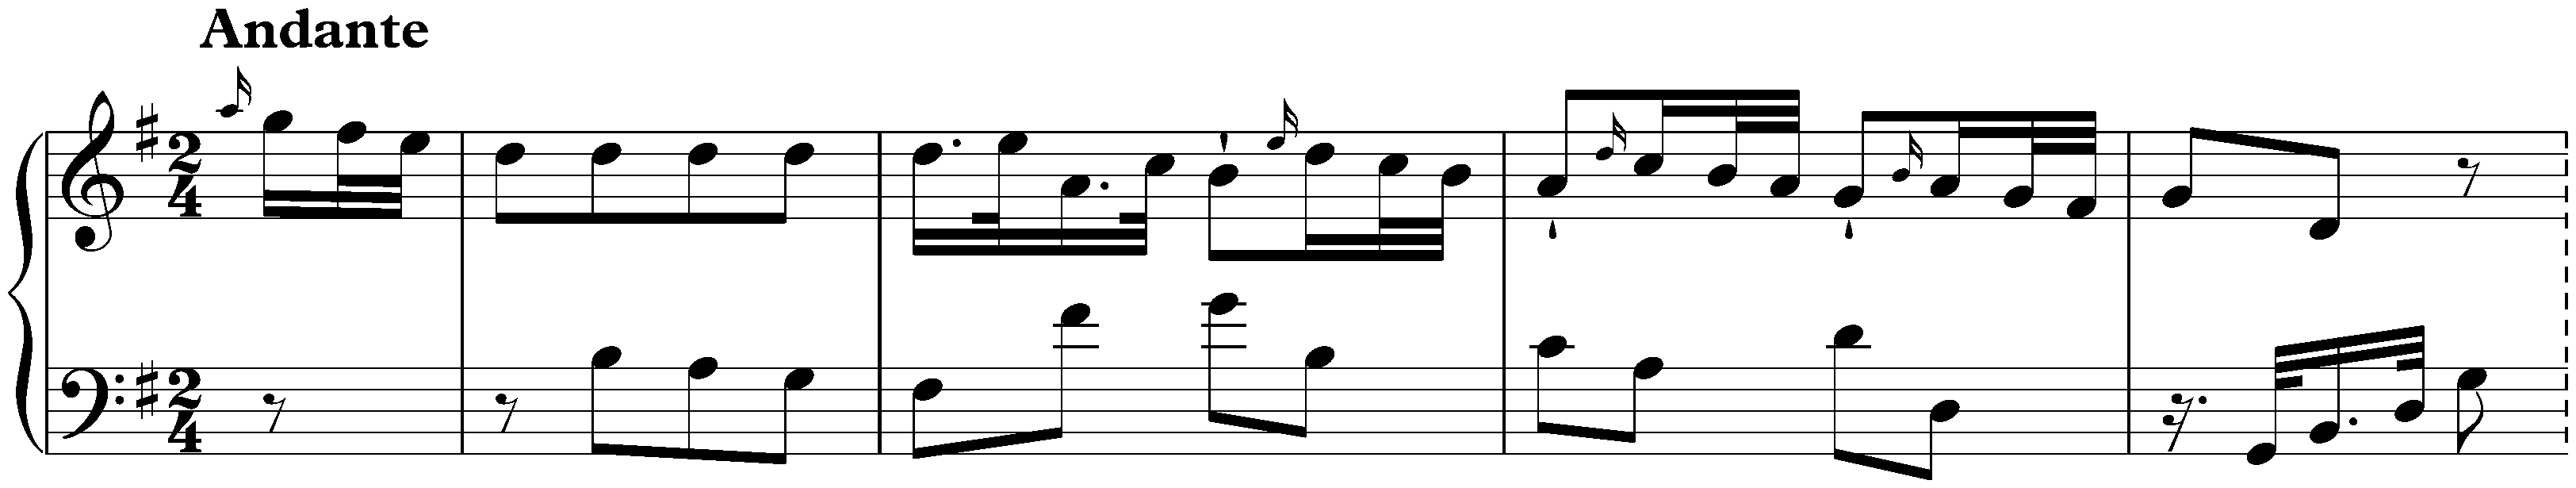 Sonata in C major, Hob. XVI:3; 2. Andante